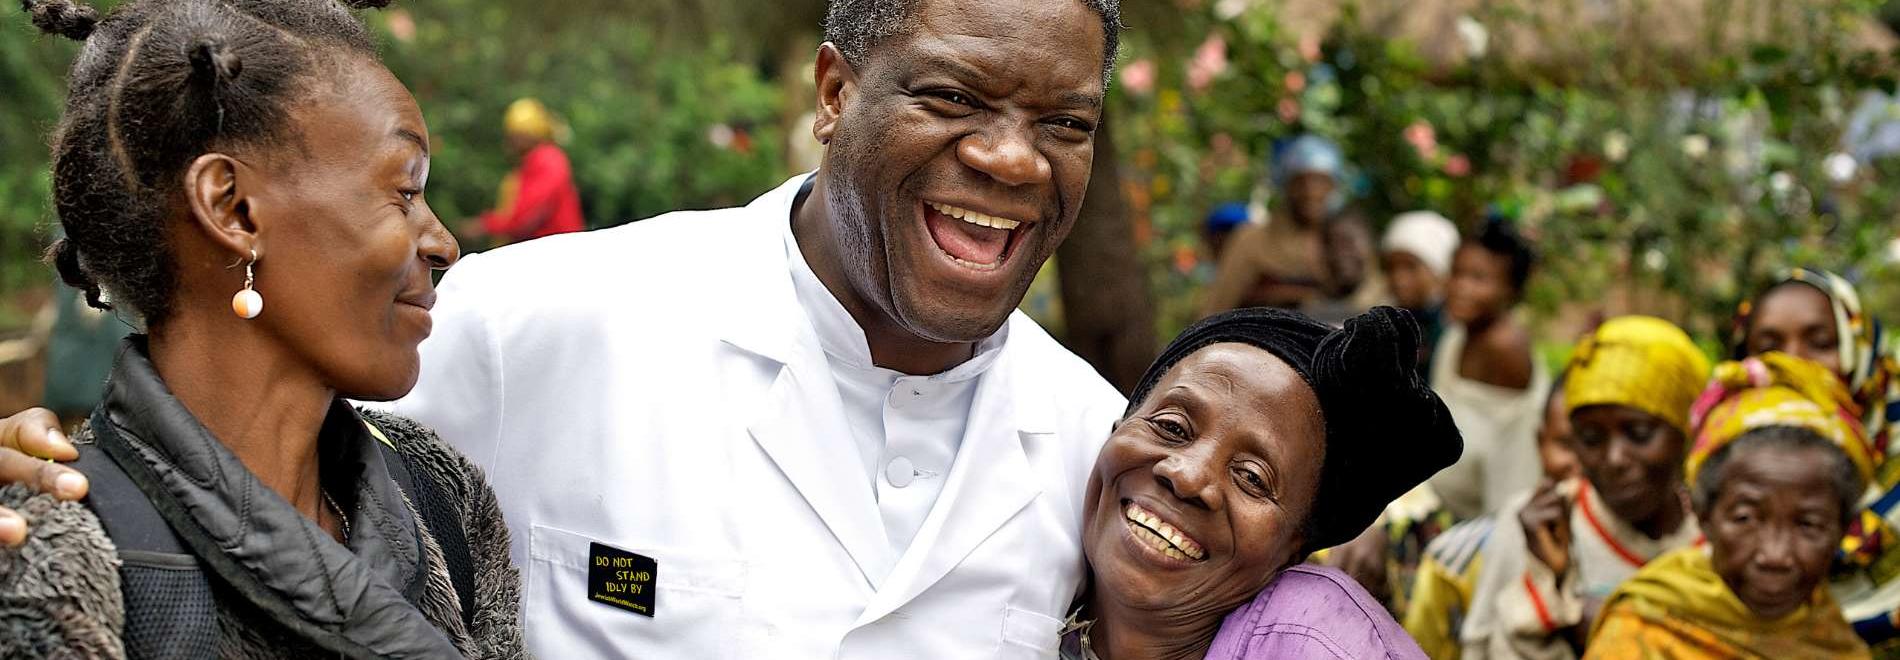 Friedensnobelpreisträger Denis Mukwege. Foto: Thierry Michel